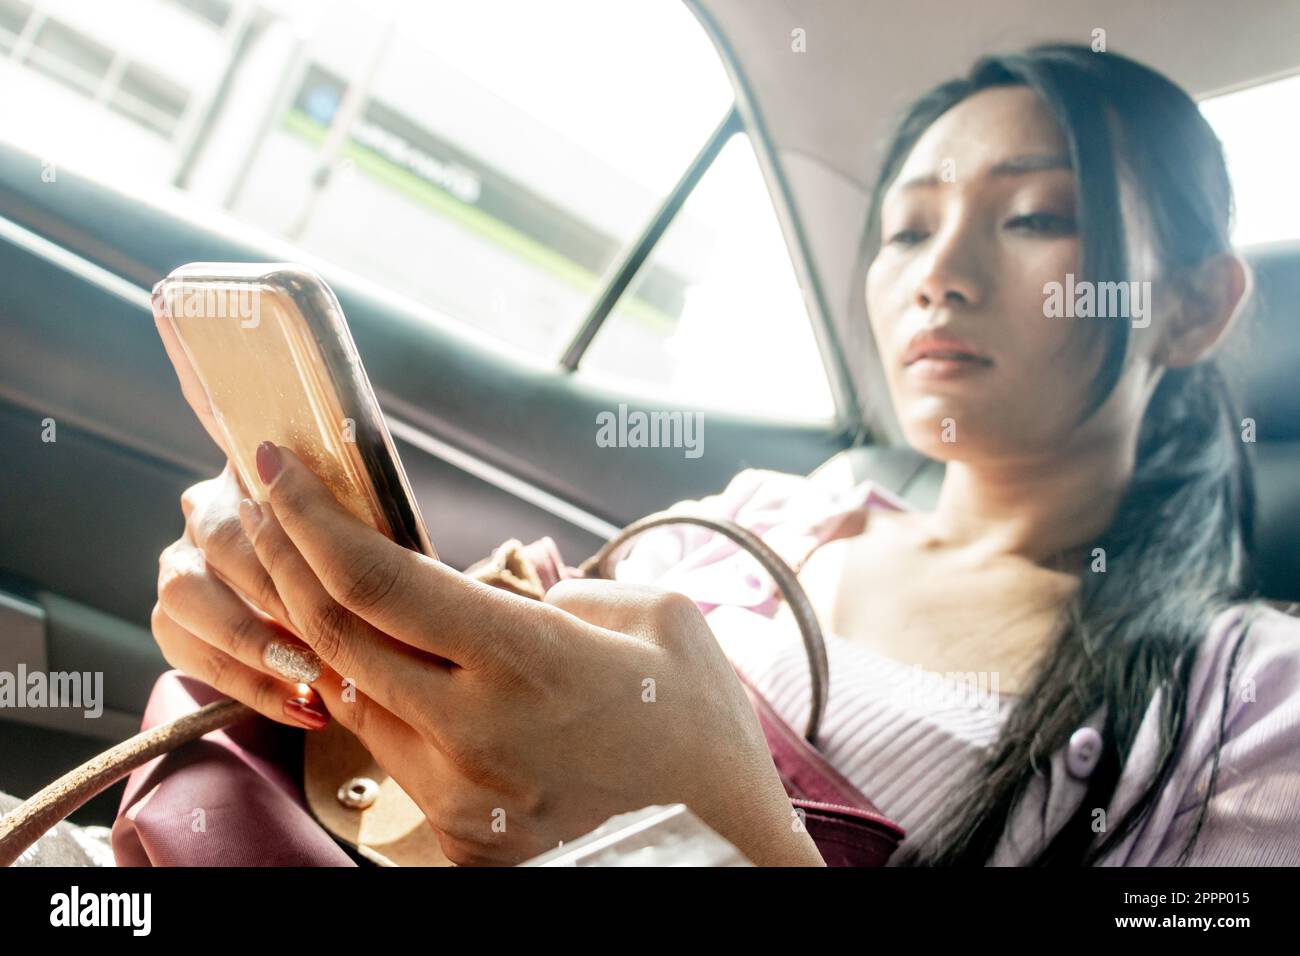 Eine junge Frau beobachtet ihr Handy, während sie im fahrenden Auto sitzt, konzentriert sich auf ihr Handy Stockfoto